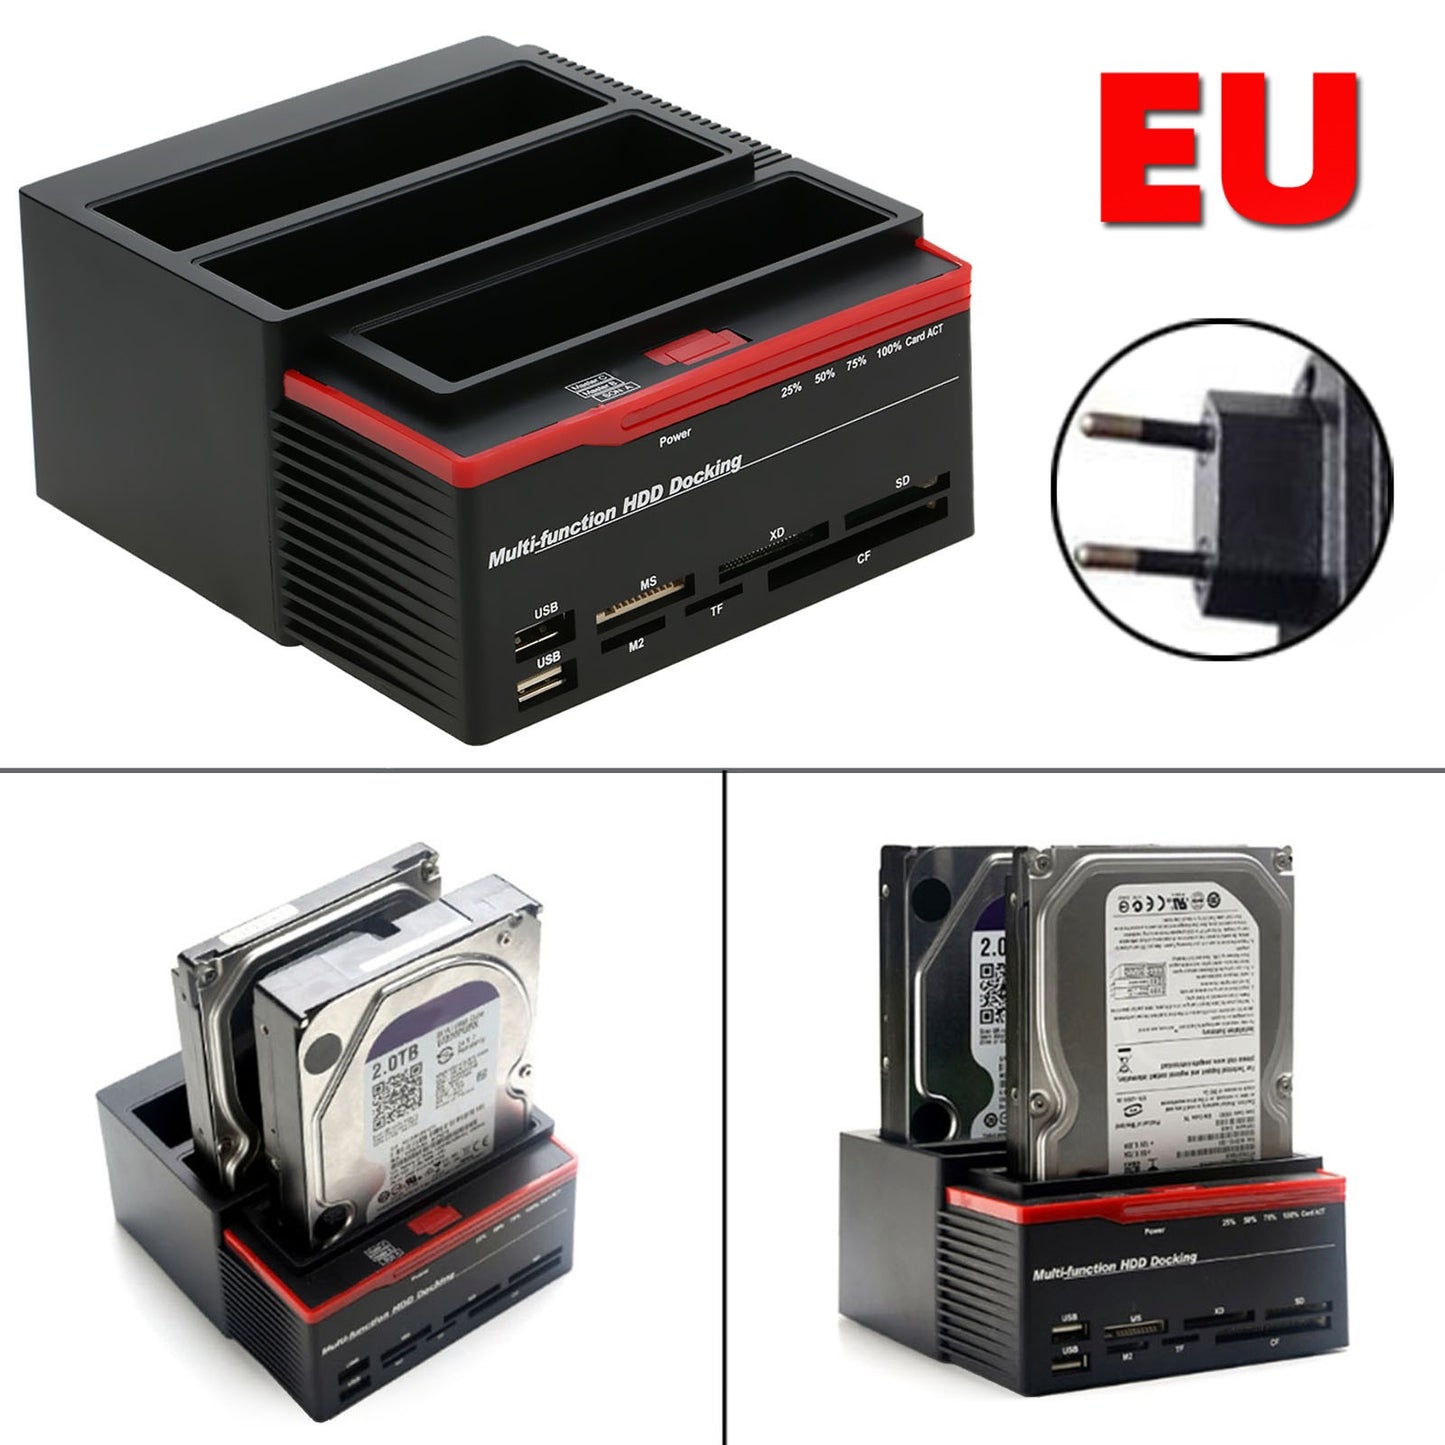 3 IDE SATA 2,5 "3,5" HDD Festplatten -Festplattenklon -Dockingstation -Kartenleser EU